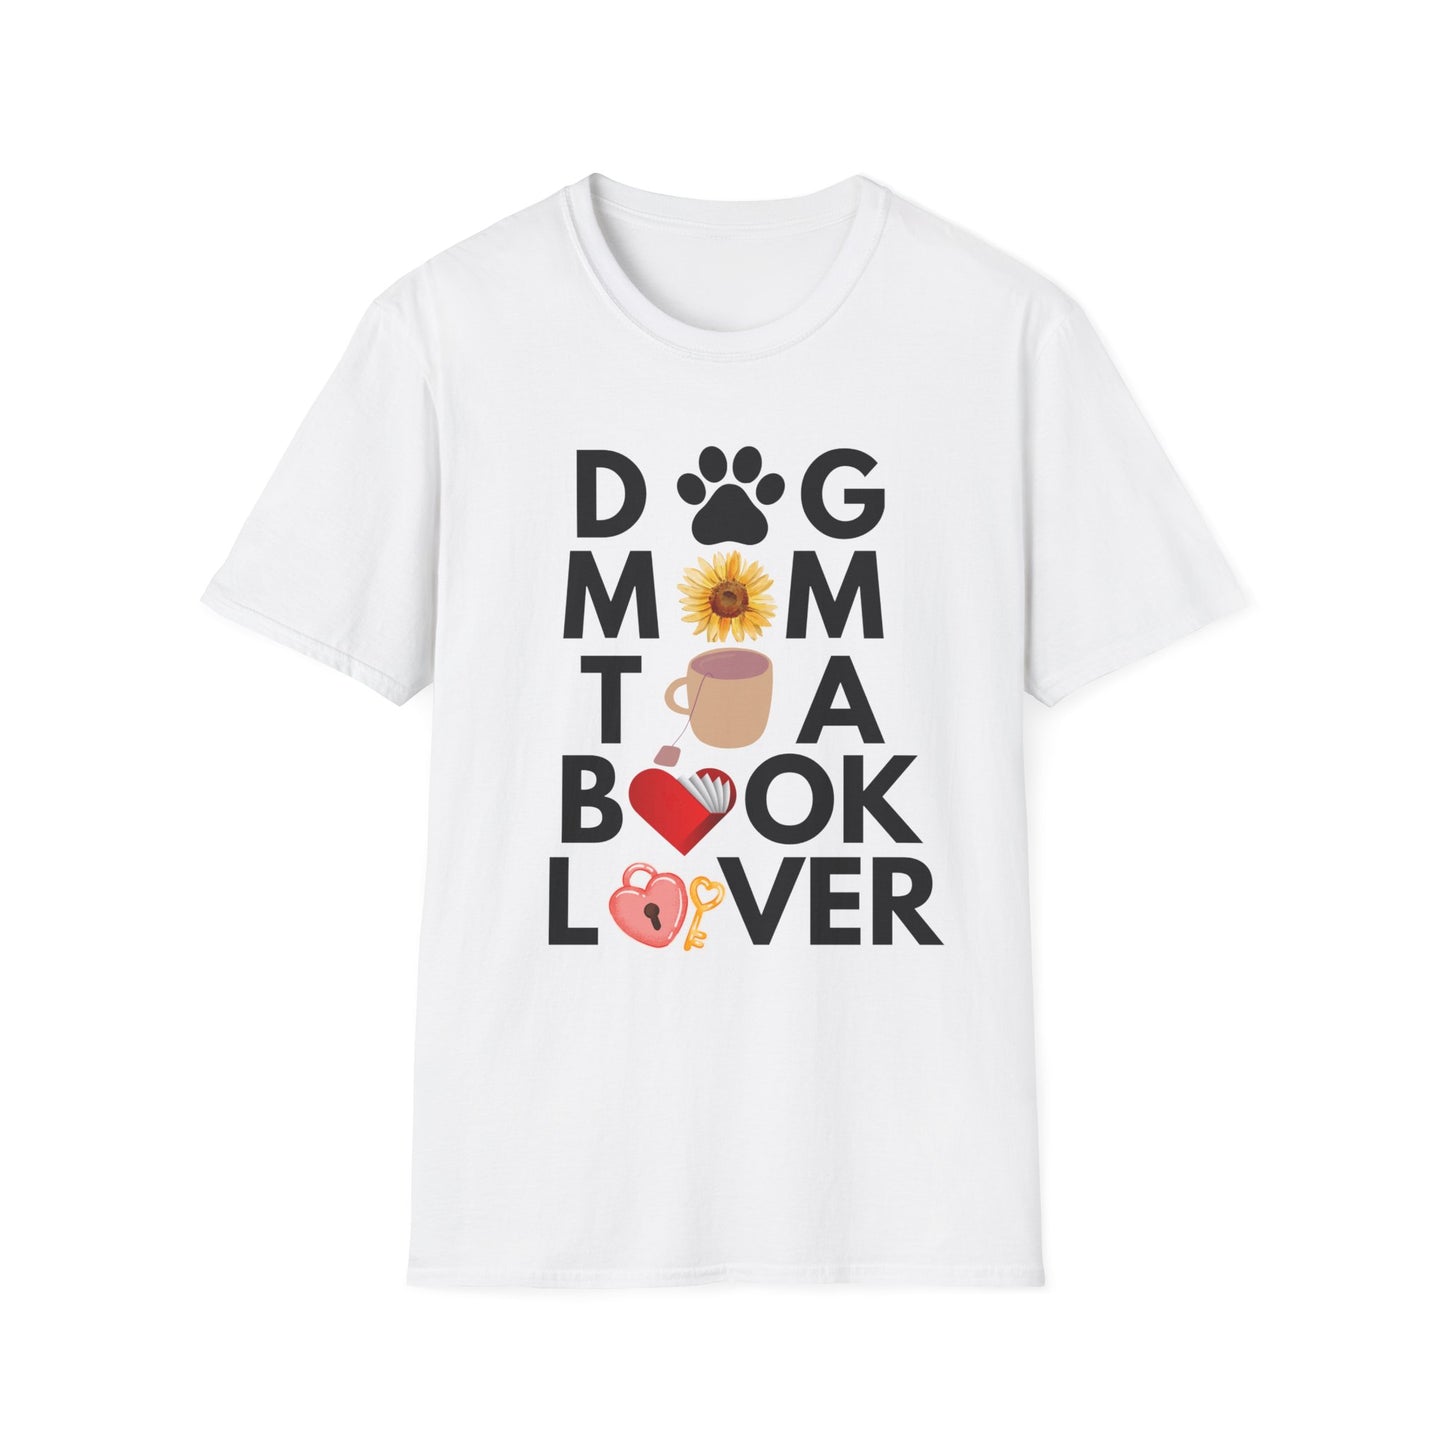 Dog Mom Book Tea Lover Soft T-Shirt